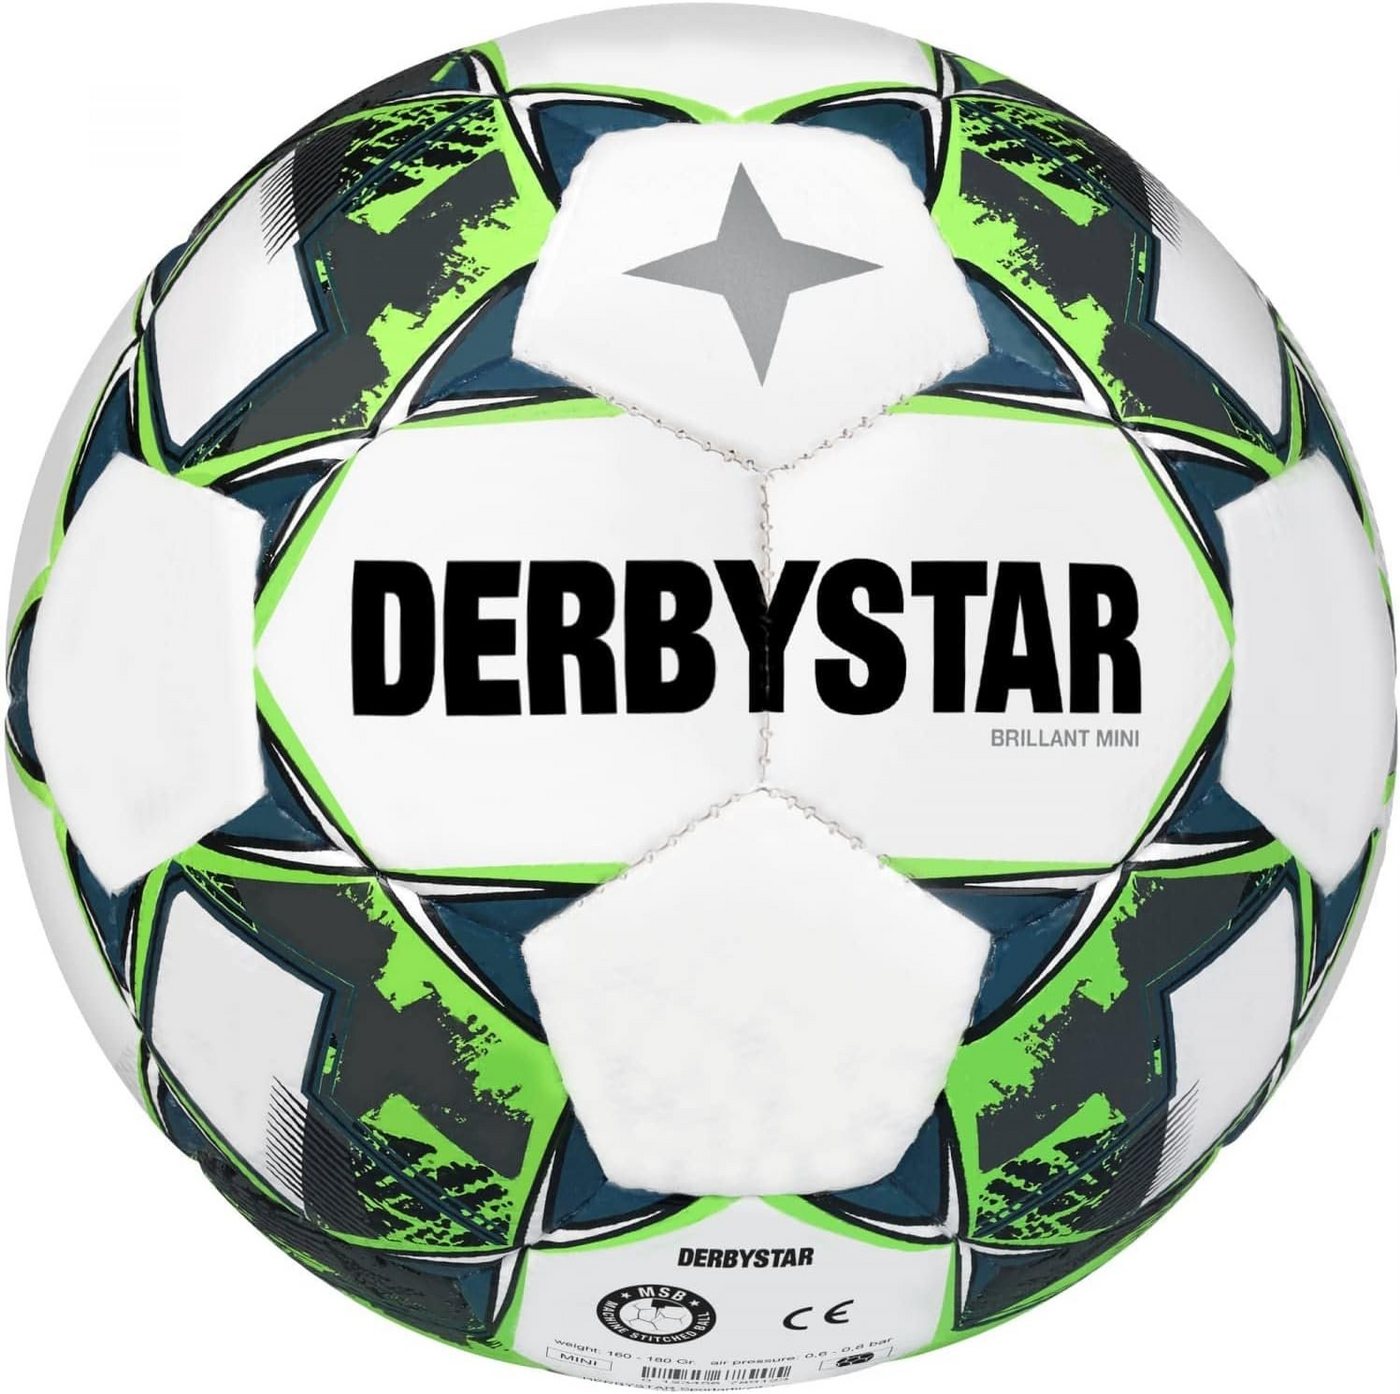 Derbystar Fußball Derbystar FB Brillant Mini V22 von Derbystar